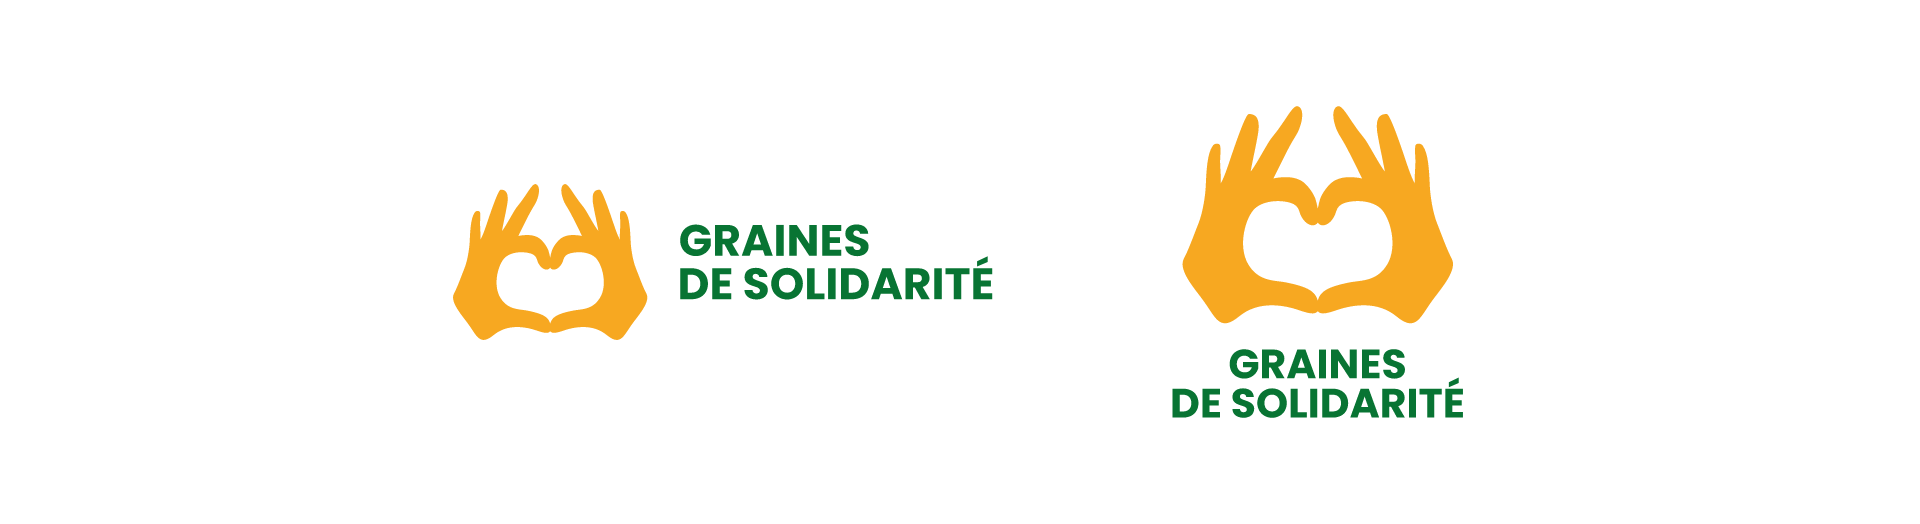 Création du logotype de Graines de solidarité